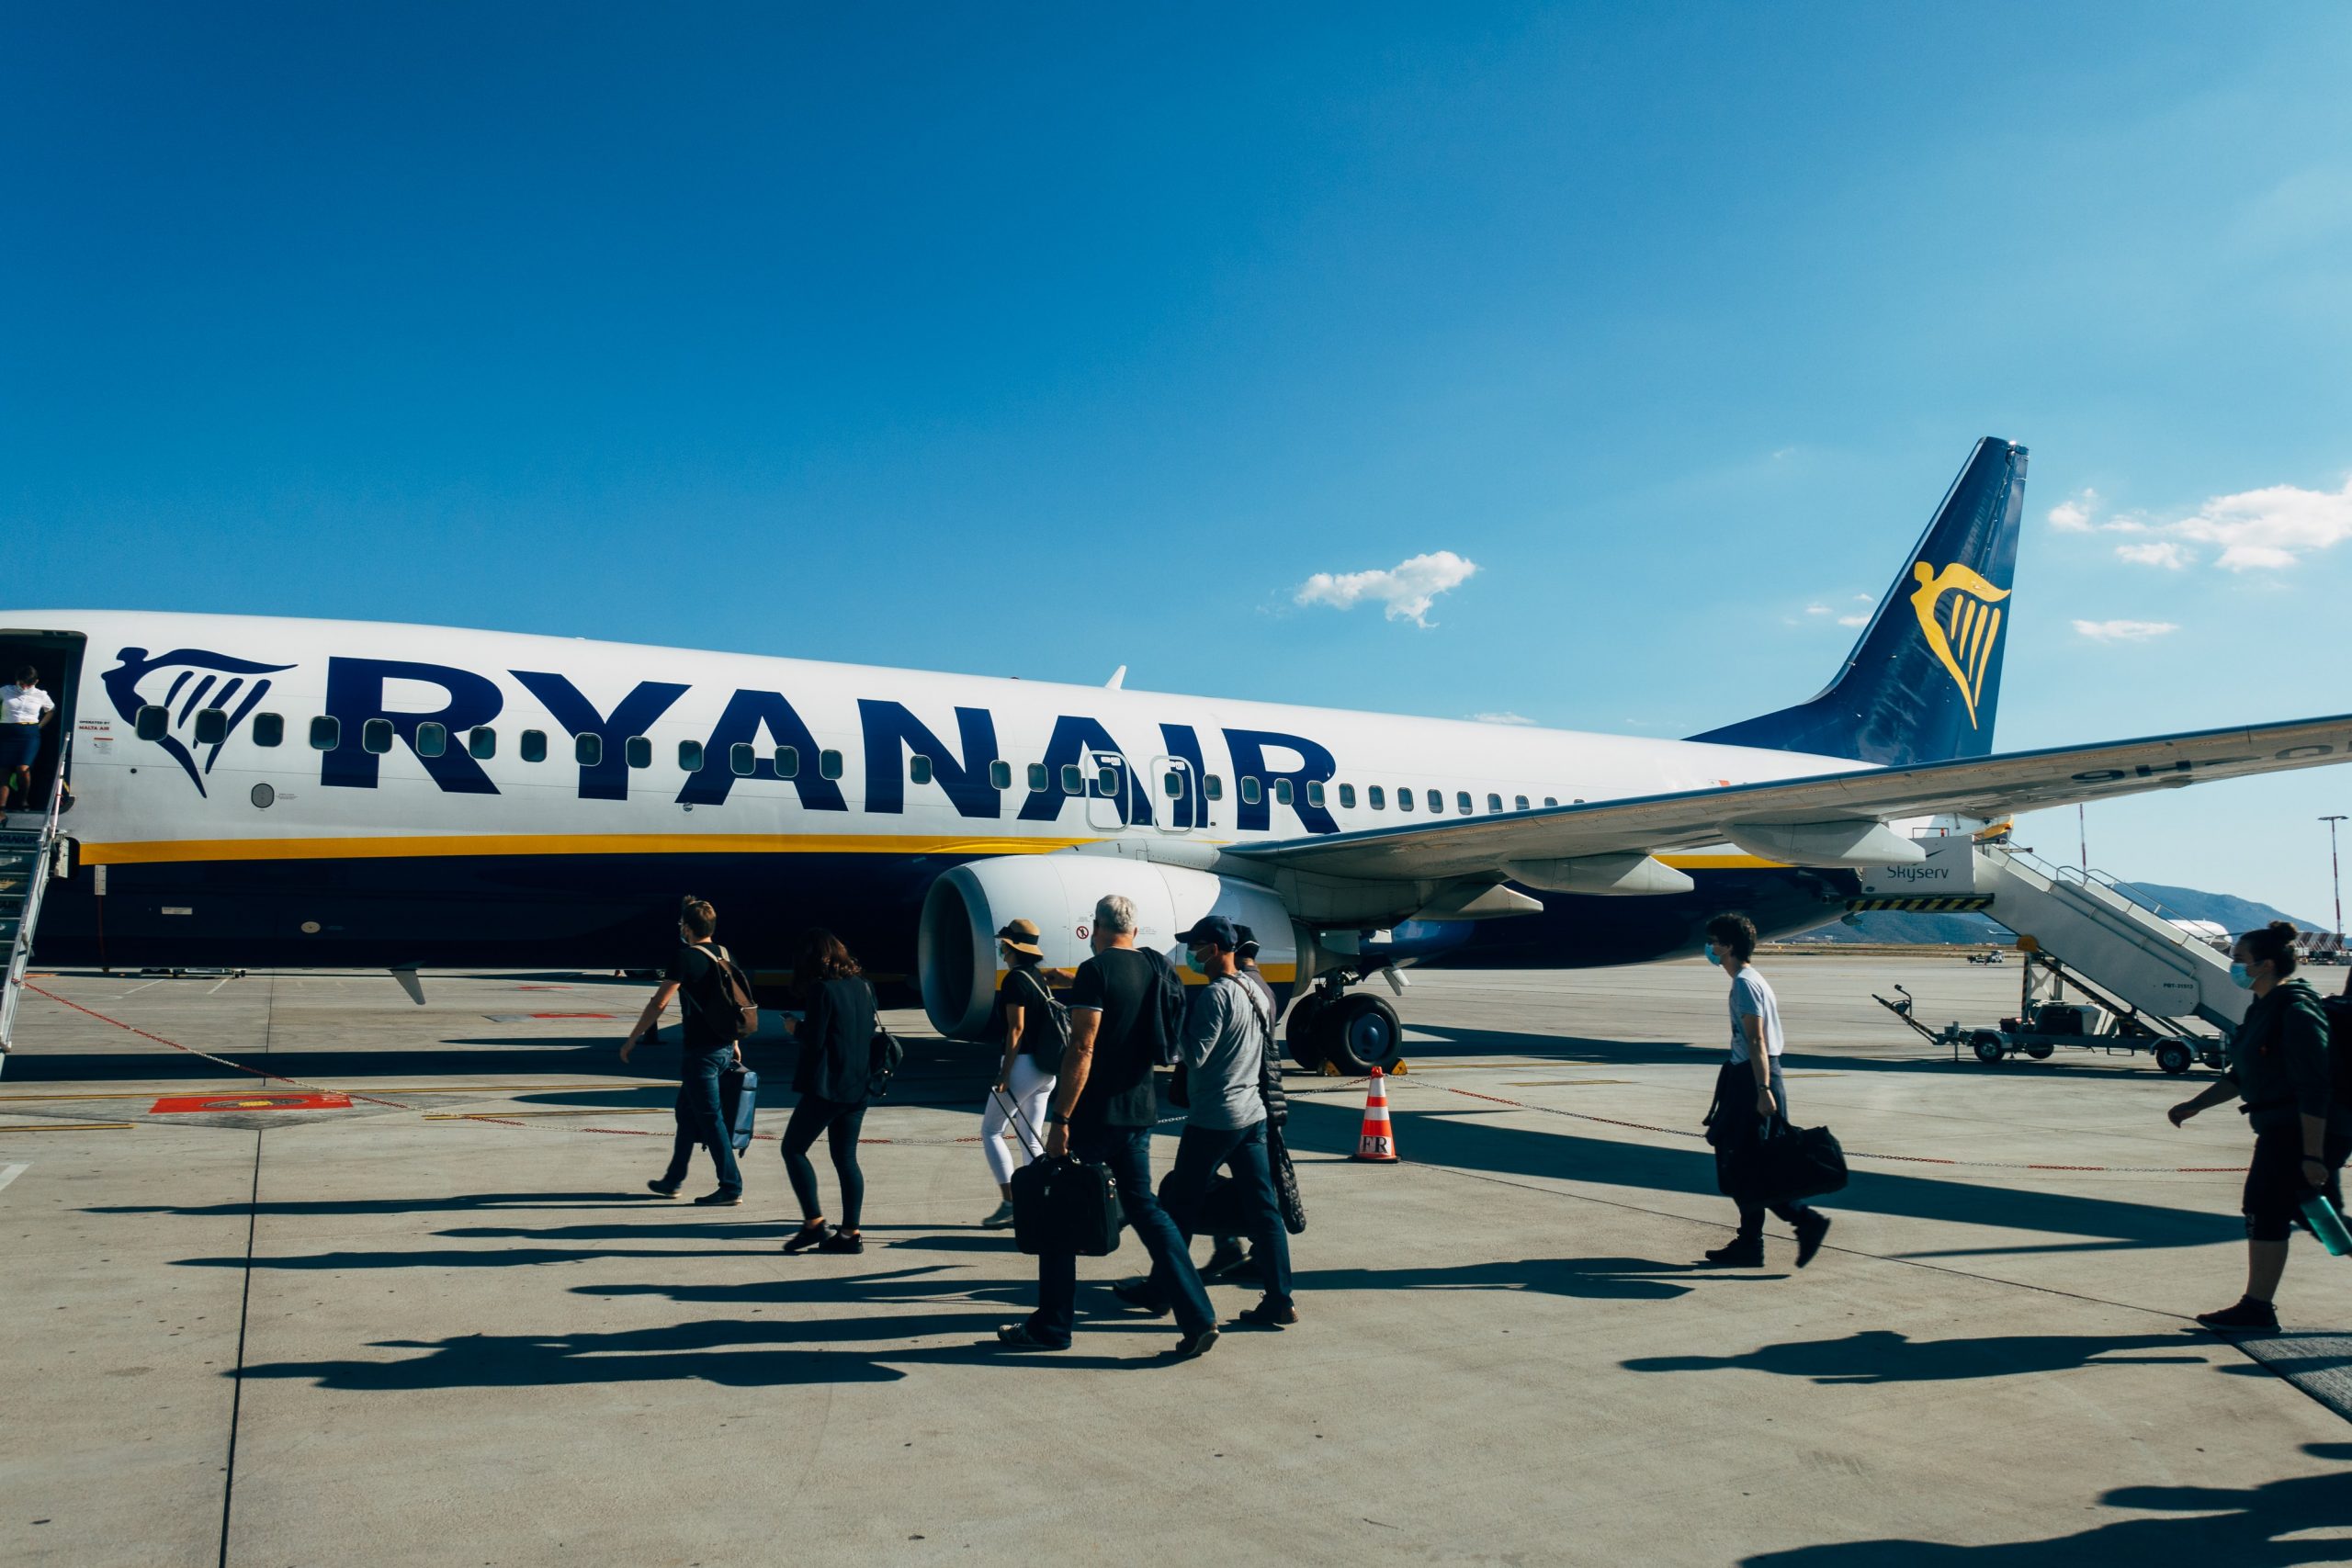 Ryanair februāra lidojumu izpārdošana! Lidojumi no Rīgas uz visiem Ryanair tiešajiem galamērķiem februārī sākot no 7.99€